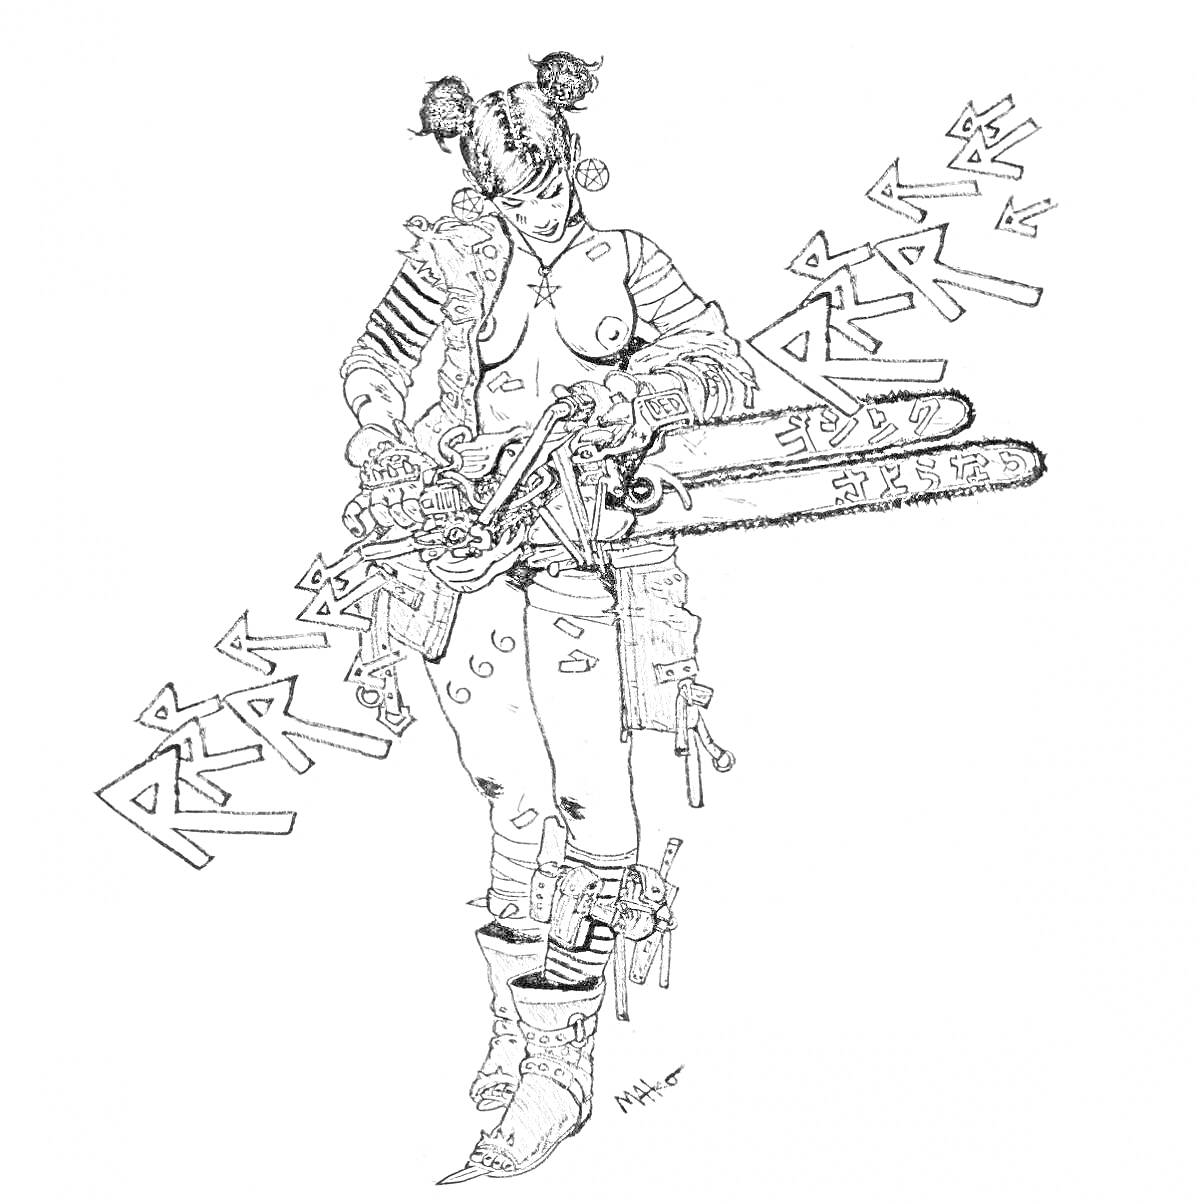 Раскраска Девушка с двумя бензопилами в руках, меховые ботинки, боевая экипировка, текстовые граффити на заднем фоне.